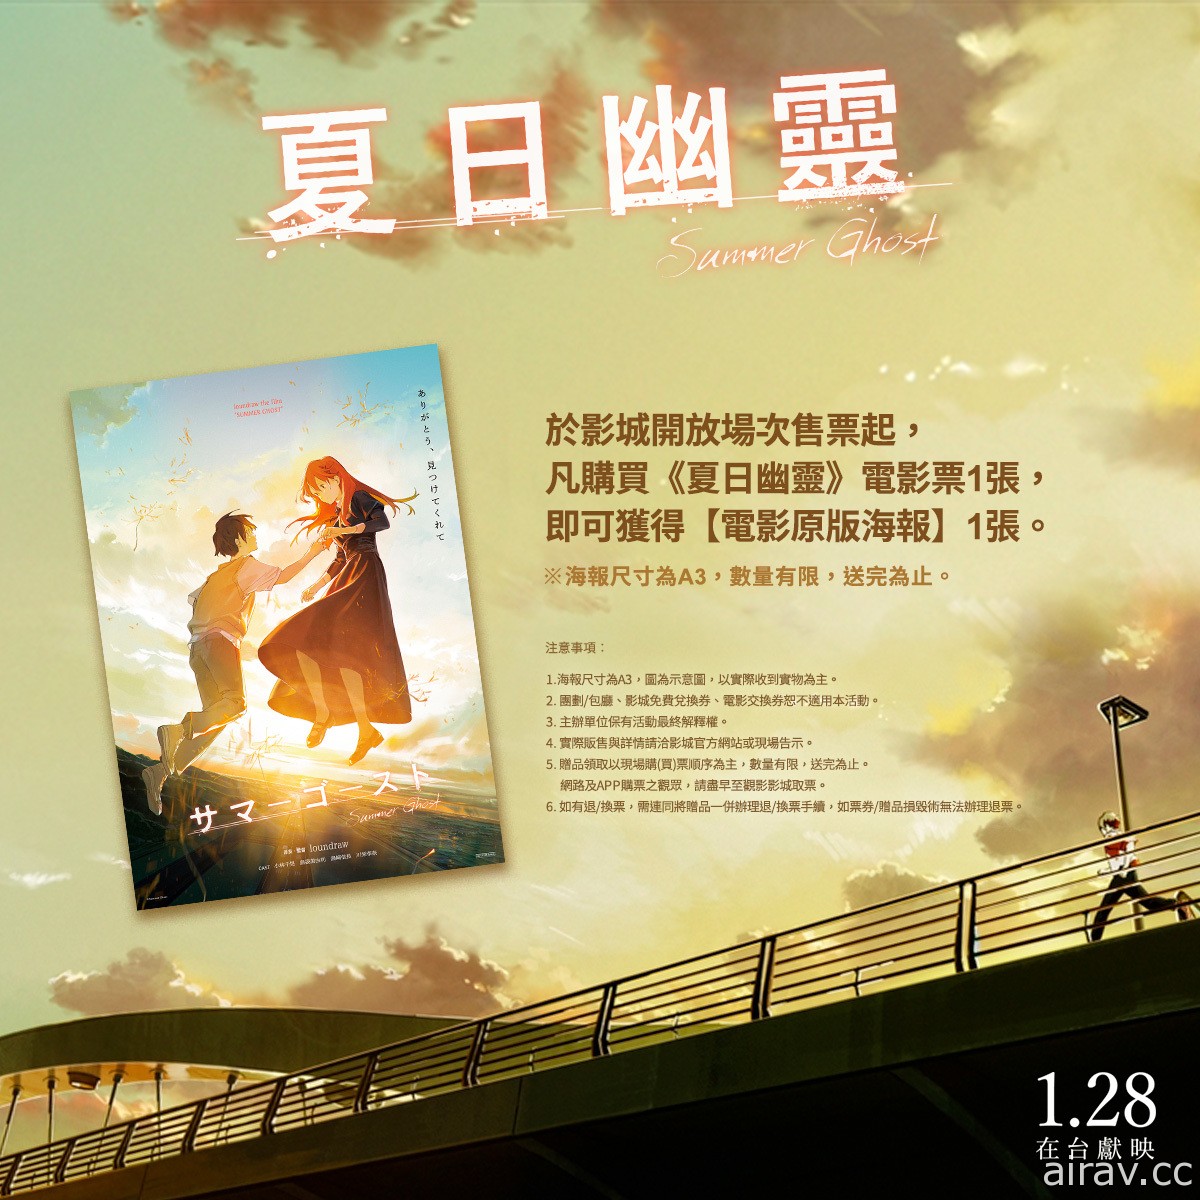 《夏日幽靈》釋出中文版預告 預售套票以及入場觀影特典資訊同步公開